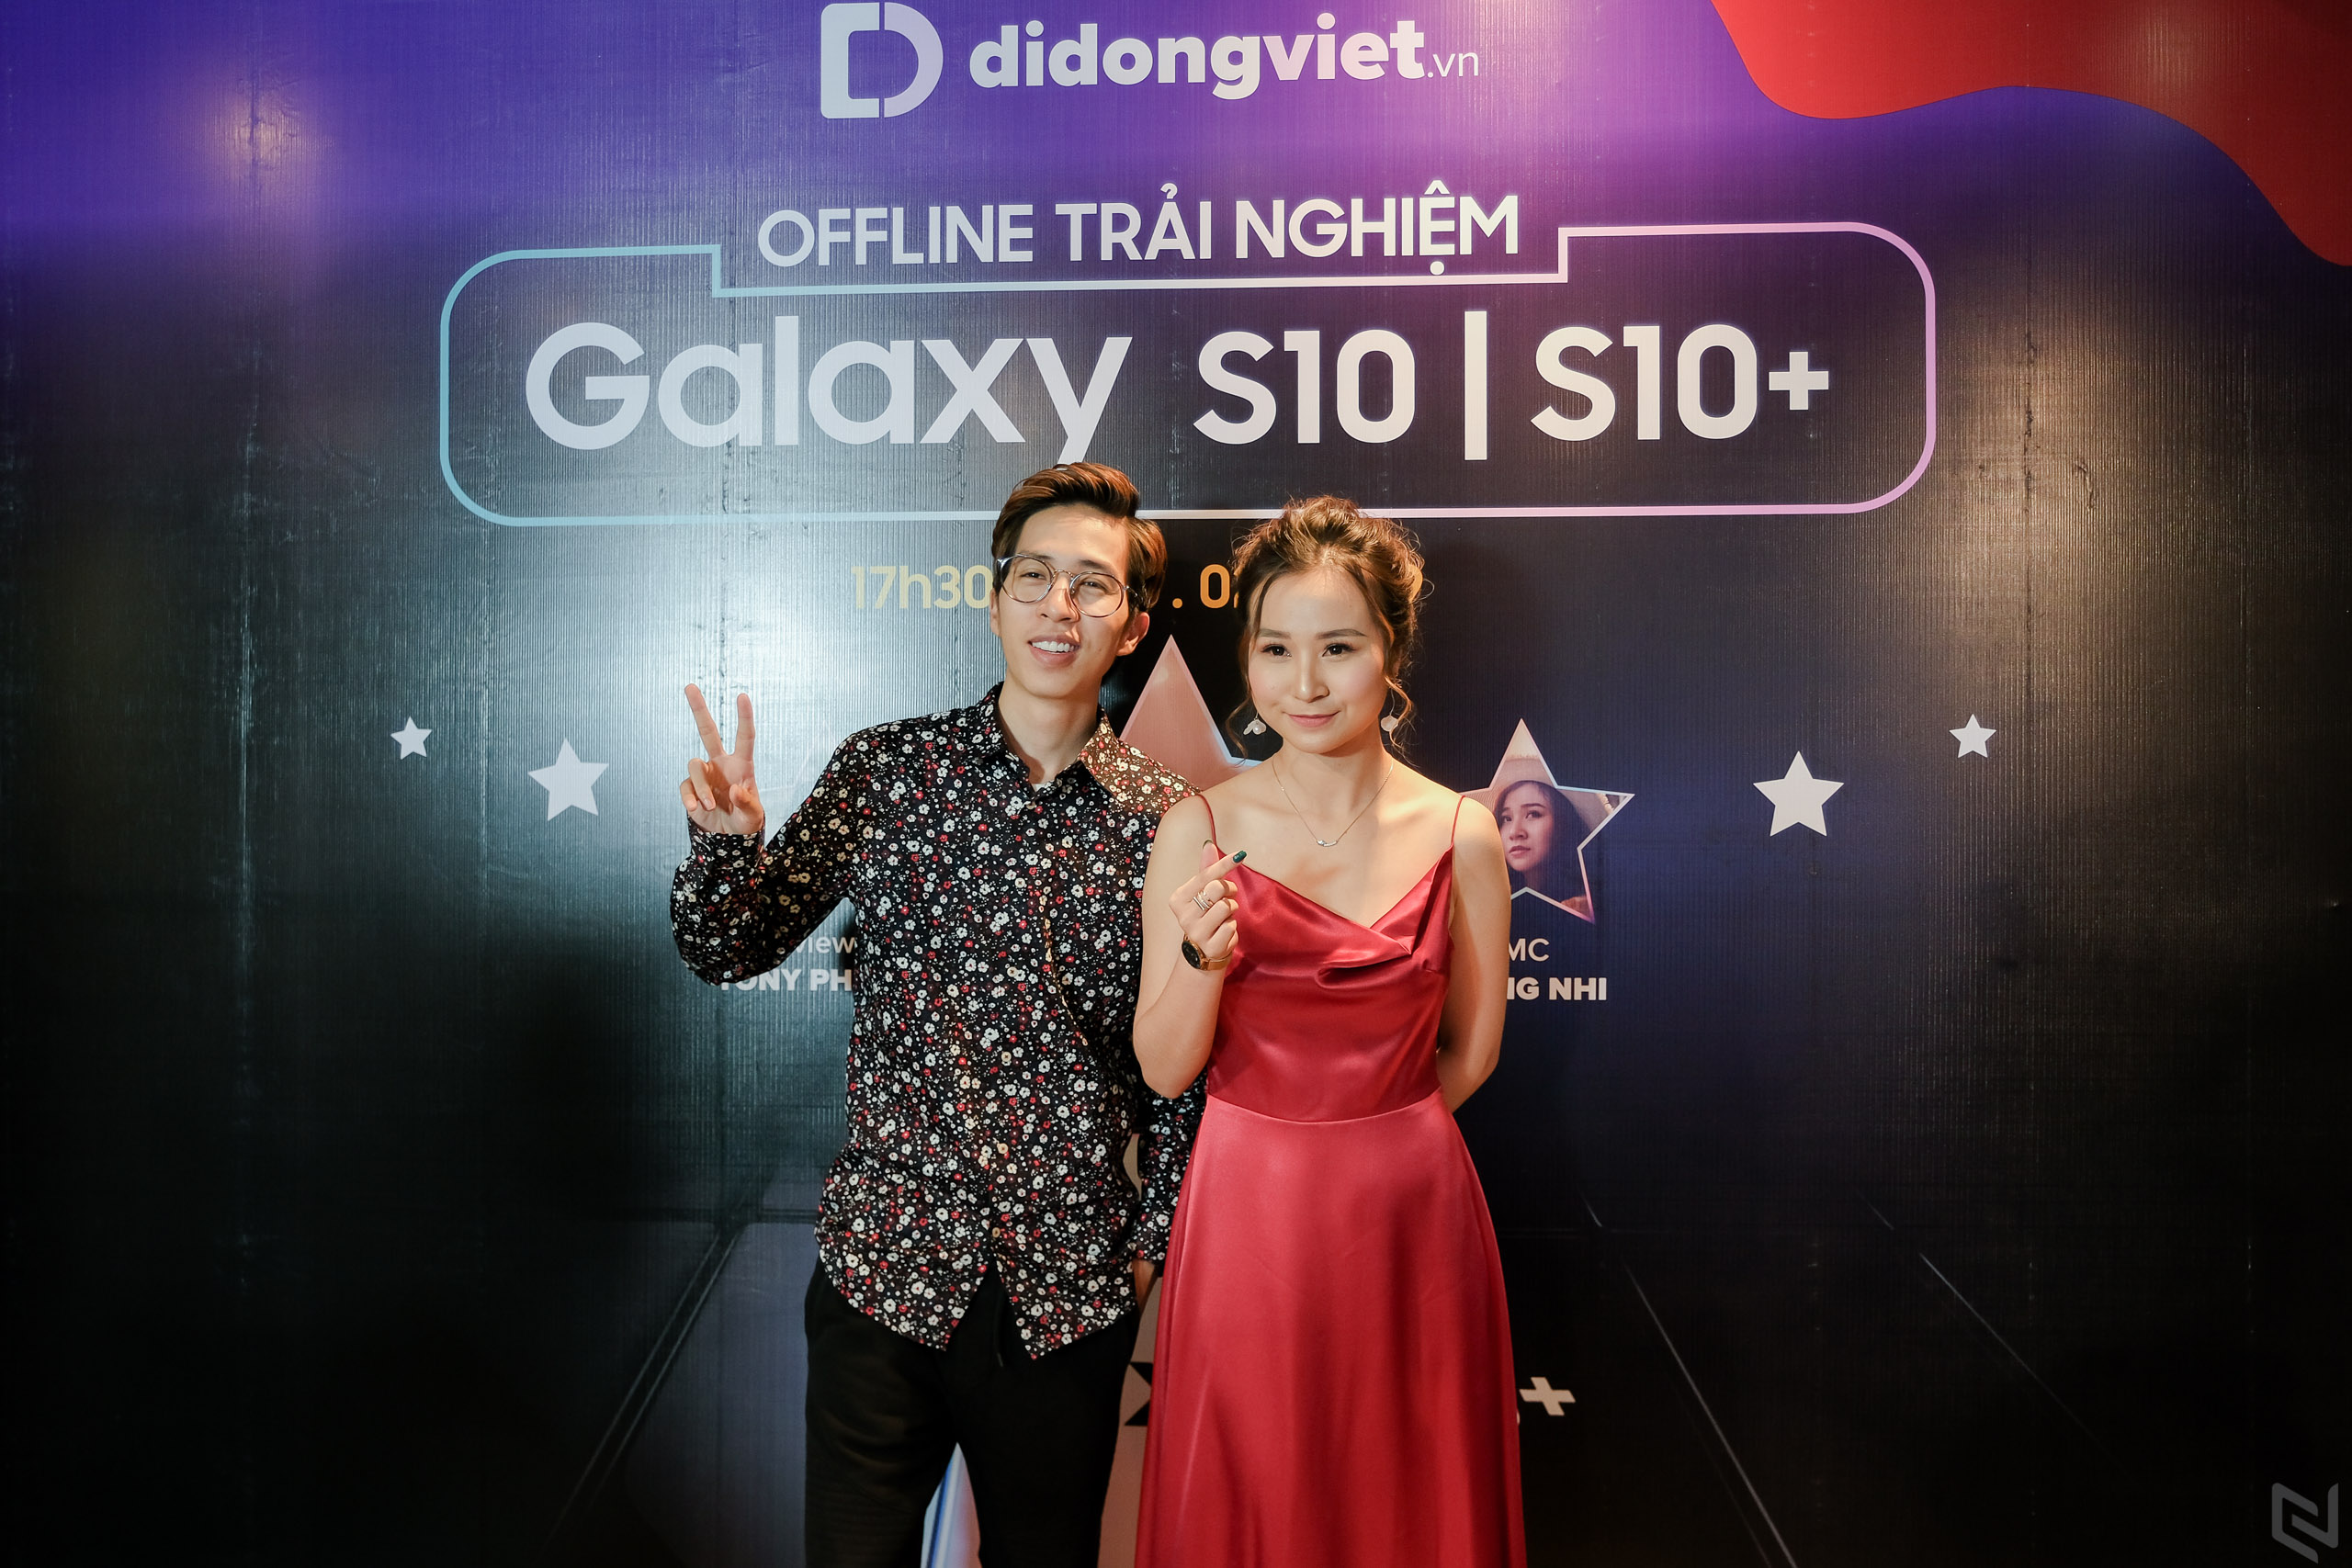 Nhà bán lẻ đầu tiên Việt Nam tổ chức Tech Offline thử độ bền và tháo tung Galaxy S10